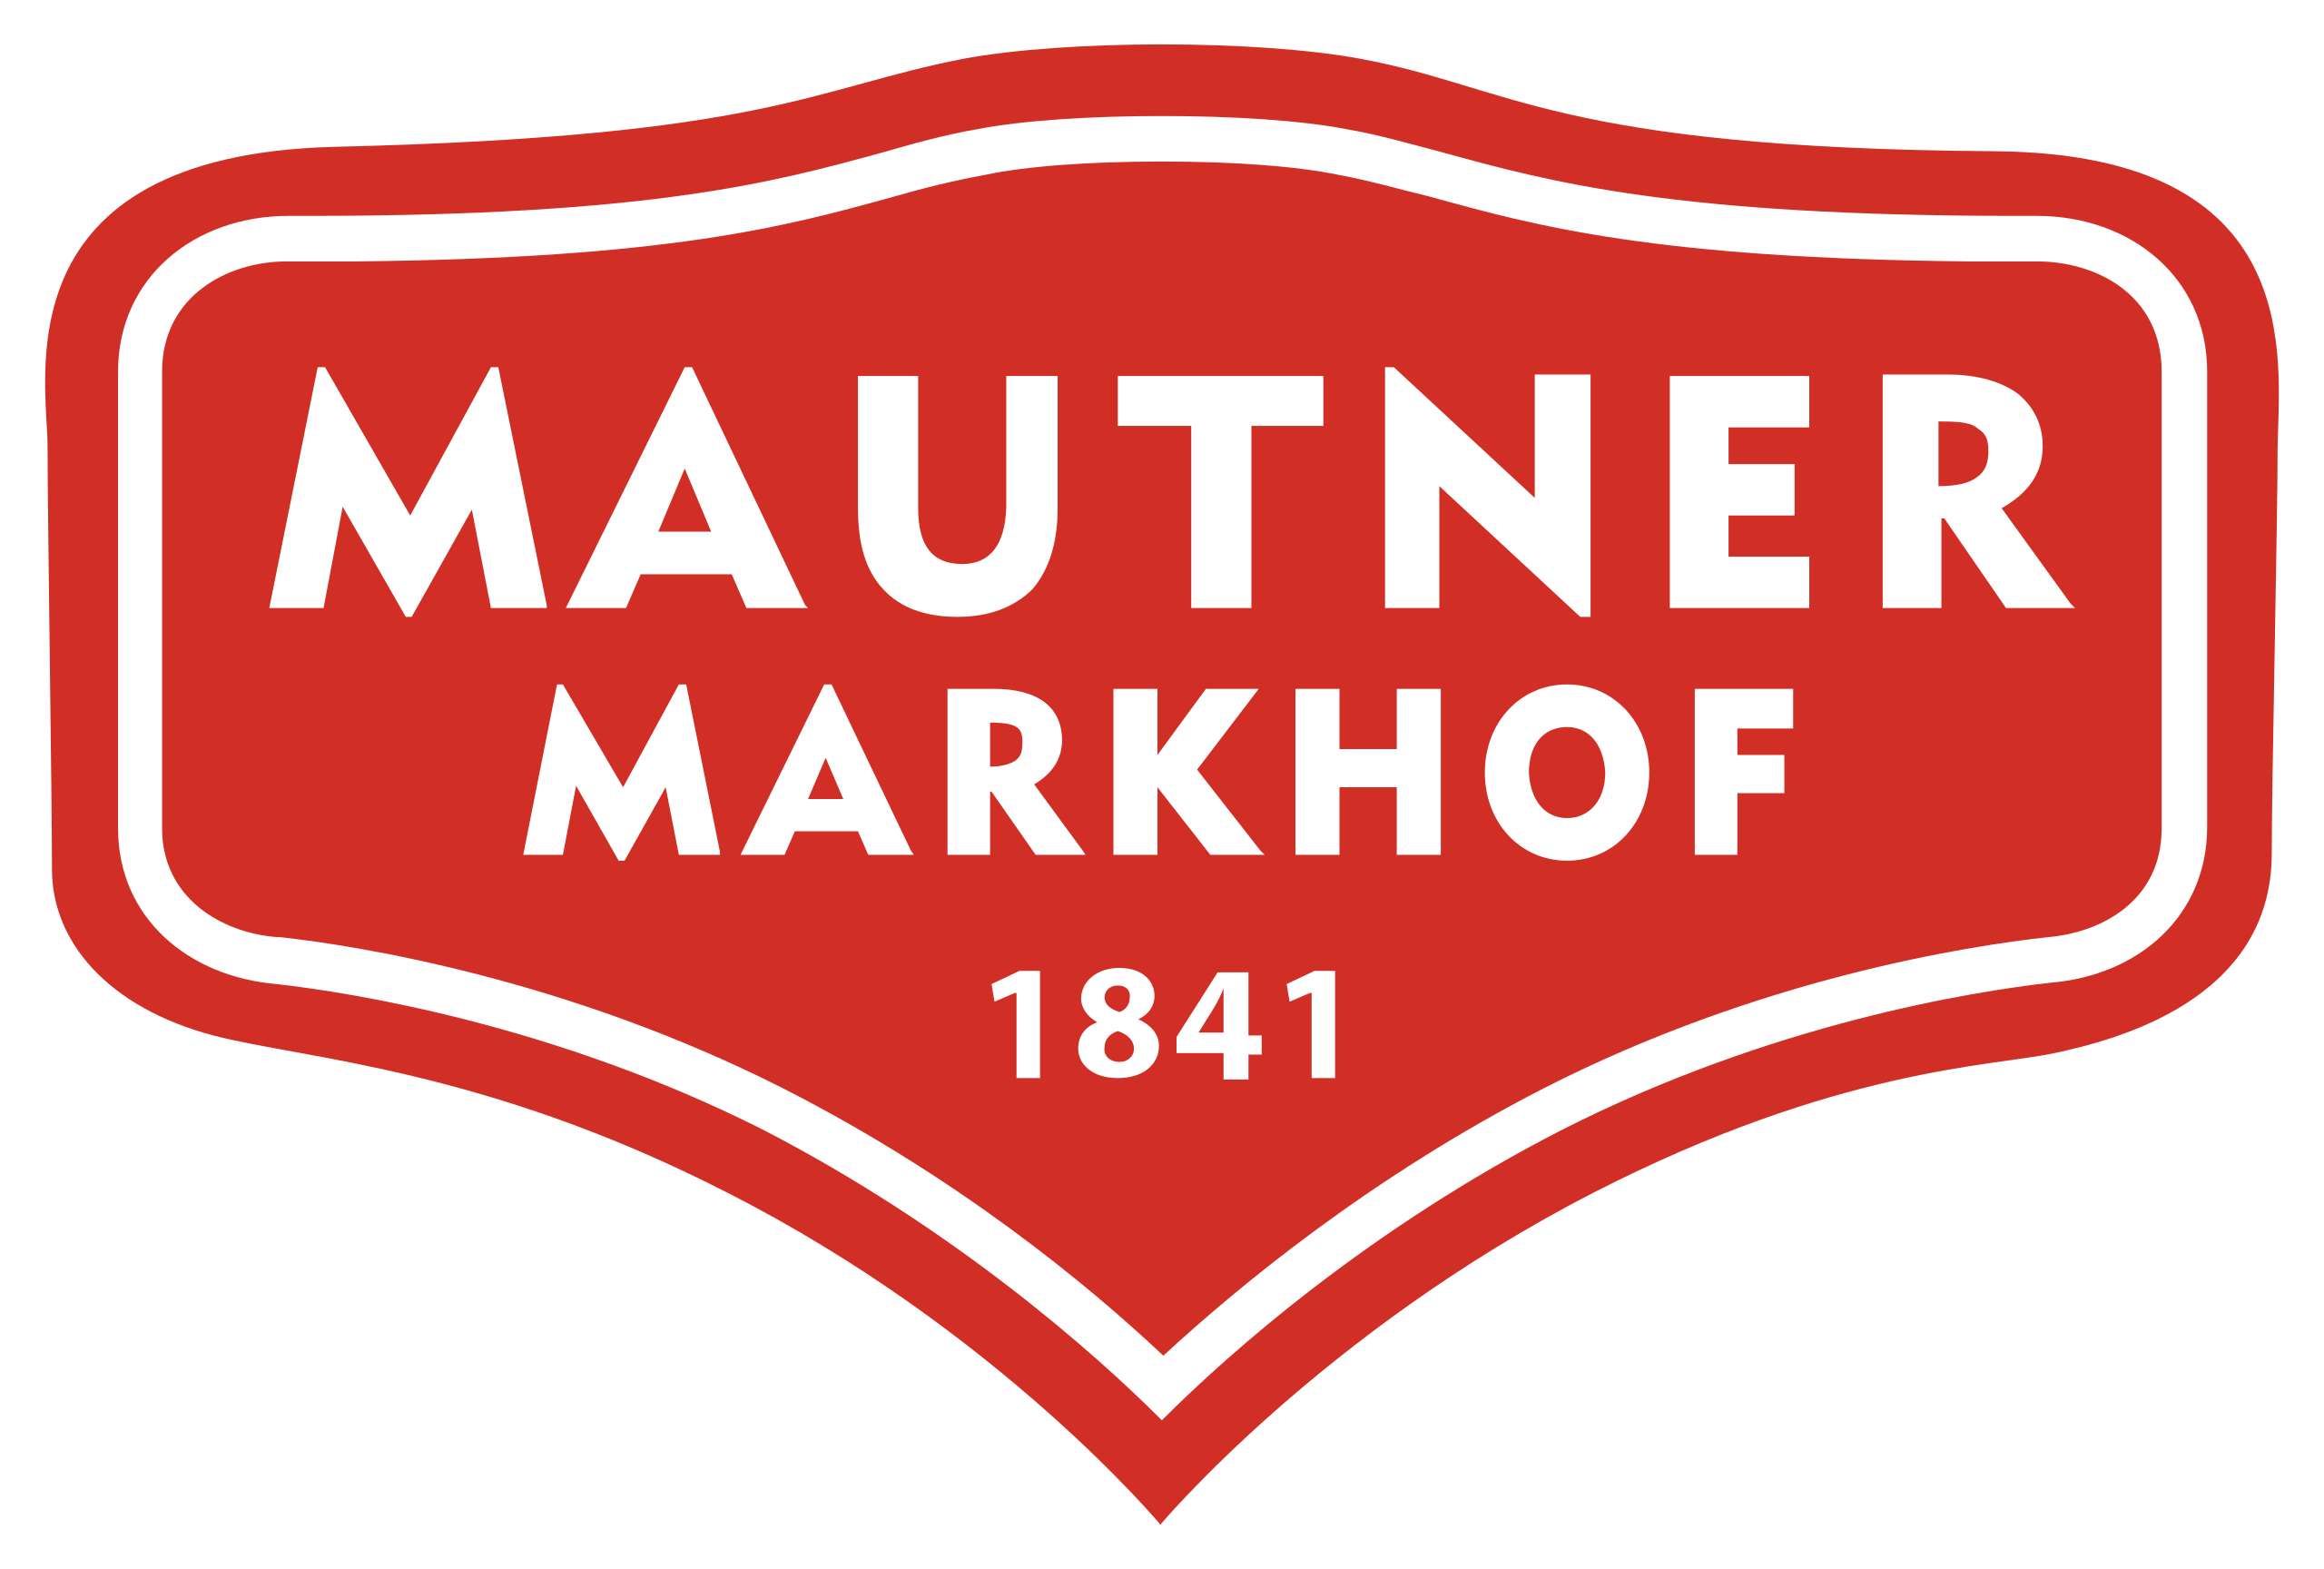 Mautner_Markhof_Feinkost_logo.svg